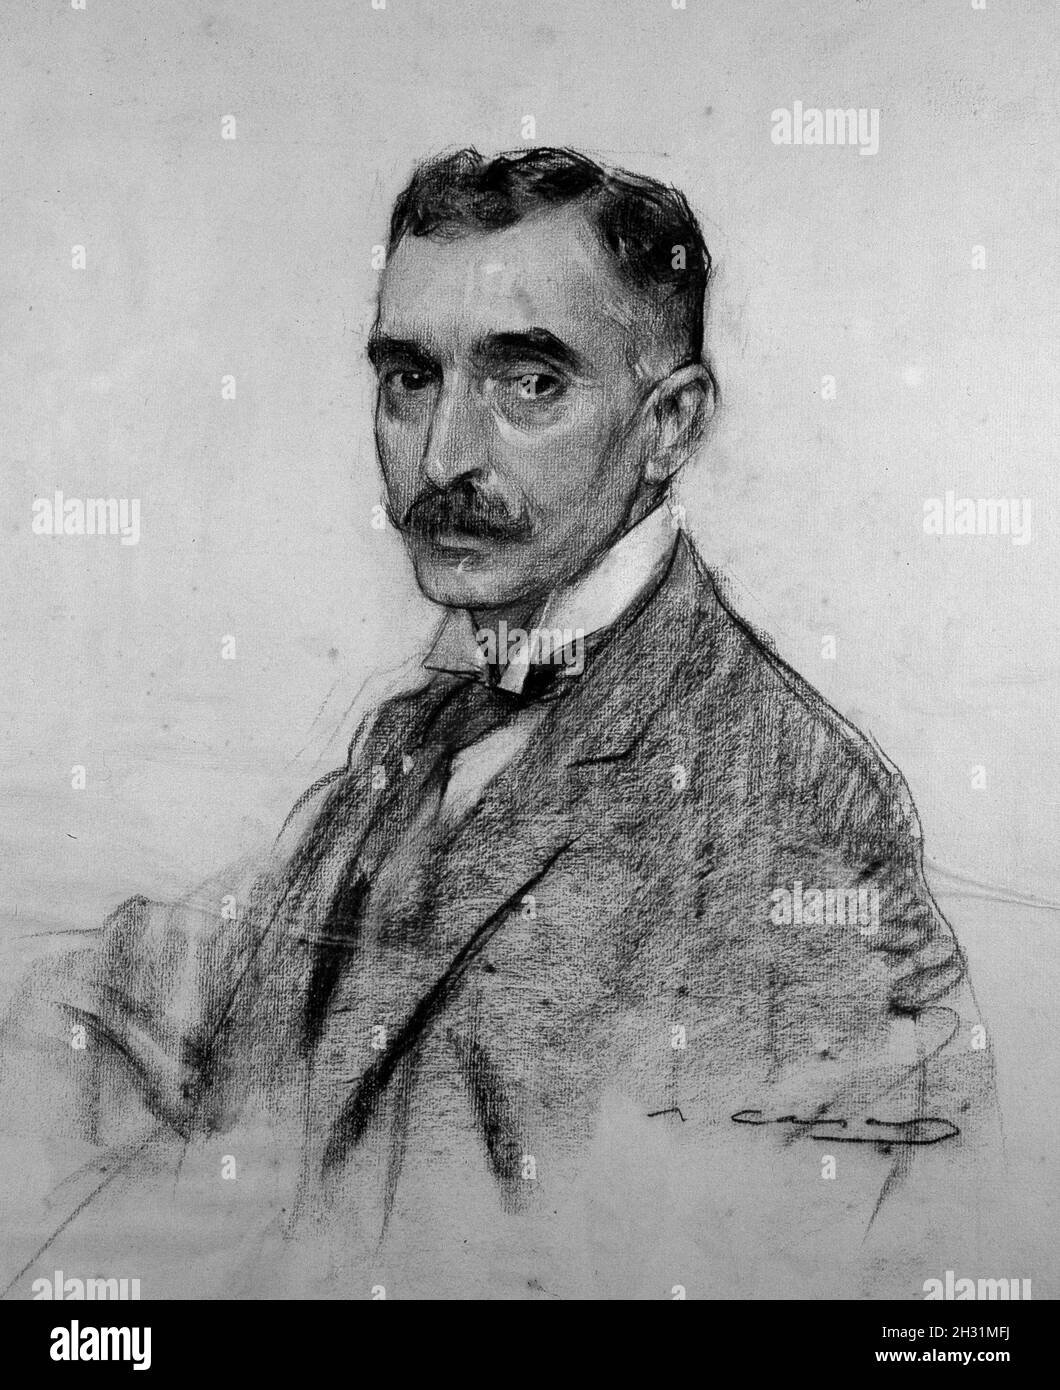 MACIA , FRANCESC. POLITICO ESPAÑOL. 1859 - 1933. DIBUJO DE RAMON CASAS. MUSEO DE ARTE MODERNO . BARCELONA. Stock Photo